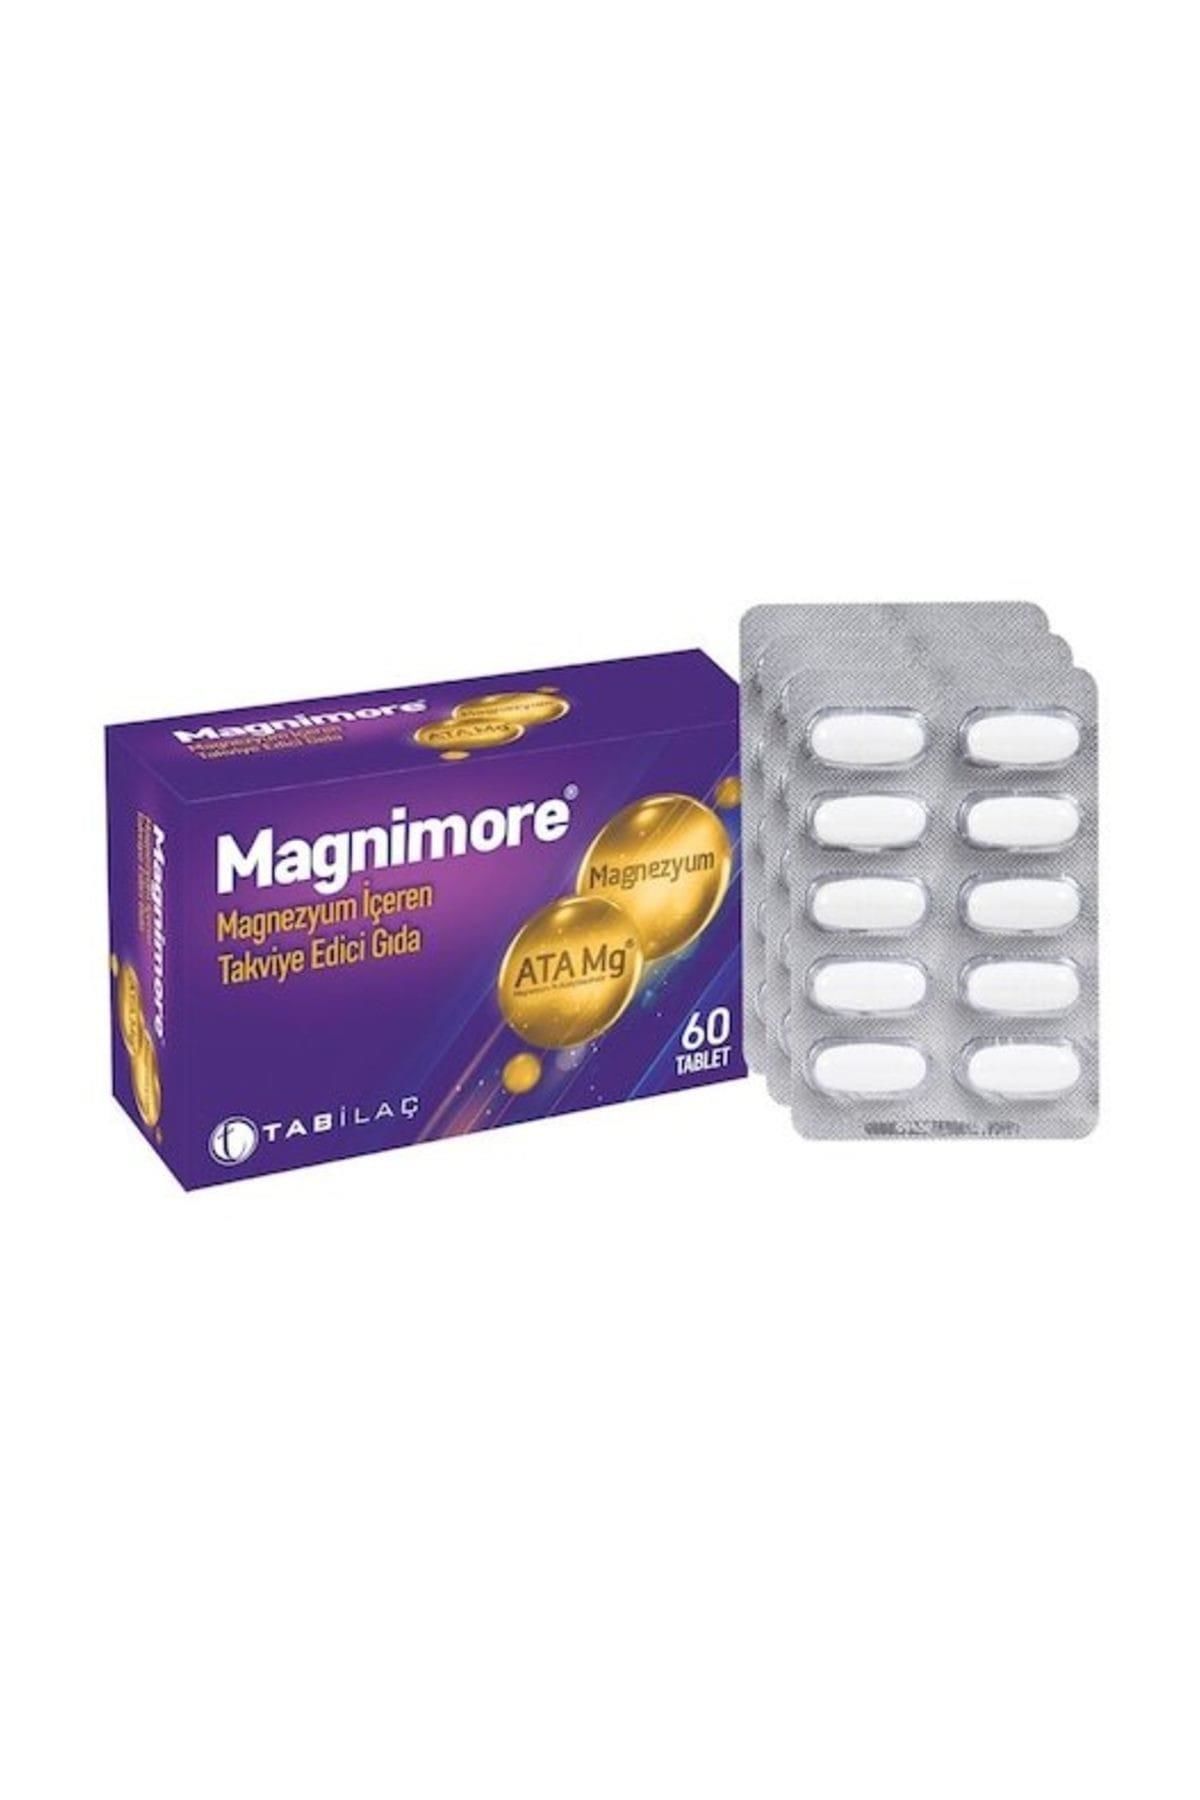 Magnimore Magnezyum 60 Tablet-Takviye Edici Gıda